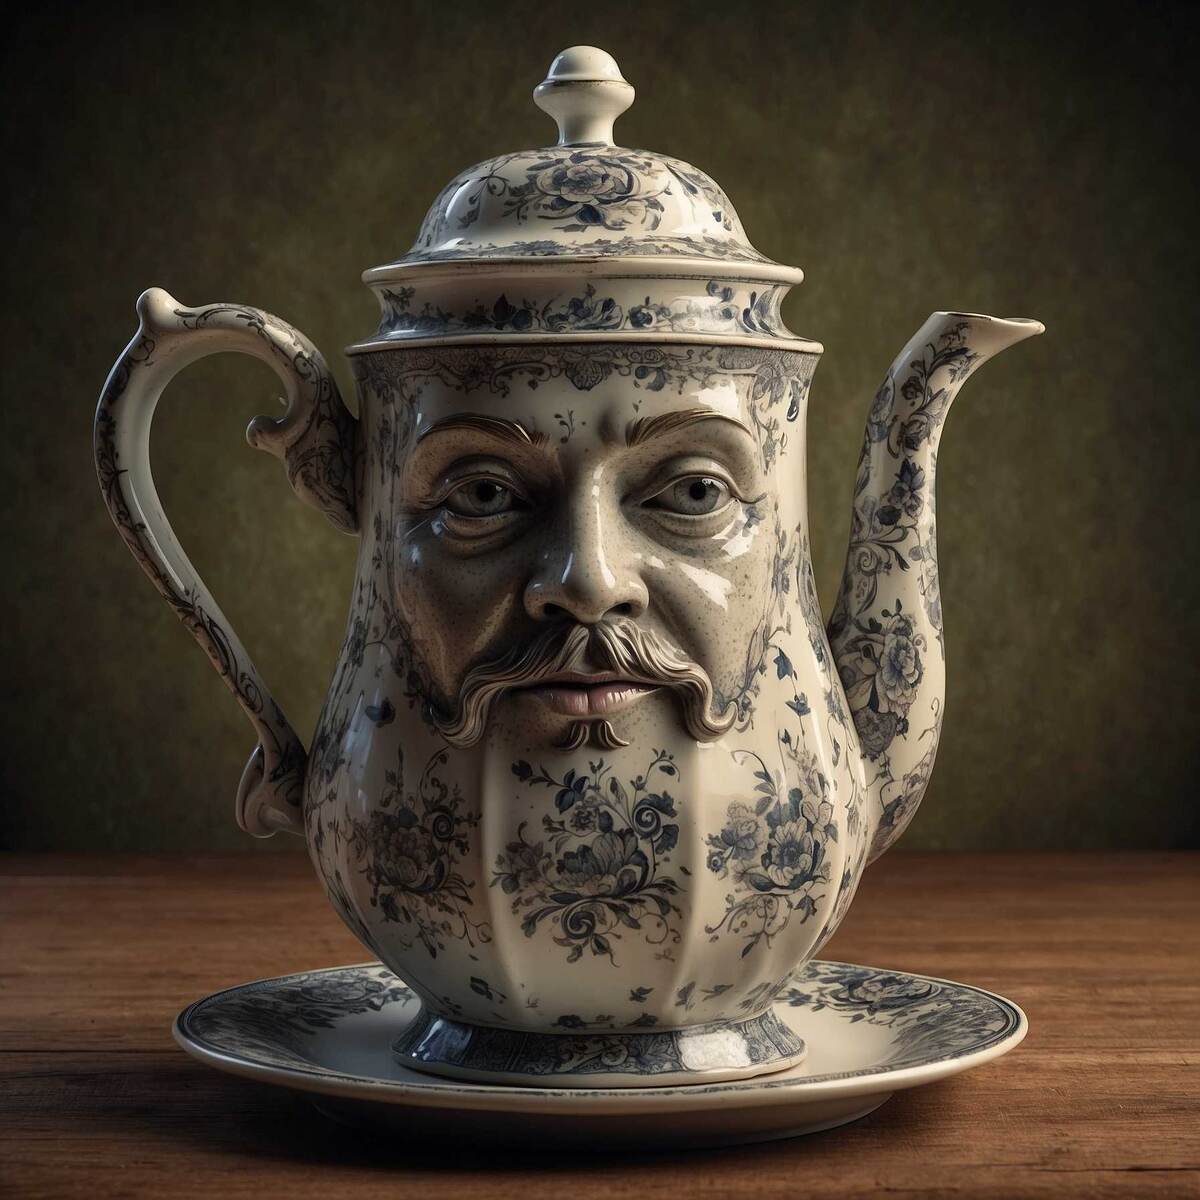 Приветики! На связи Чайная мастерская и мы продолжаем отвечать на самые популярные вопросы о самом популярном китайском чае.-1-3